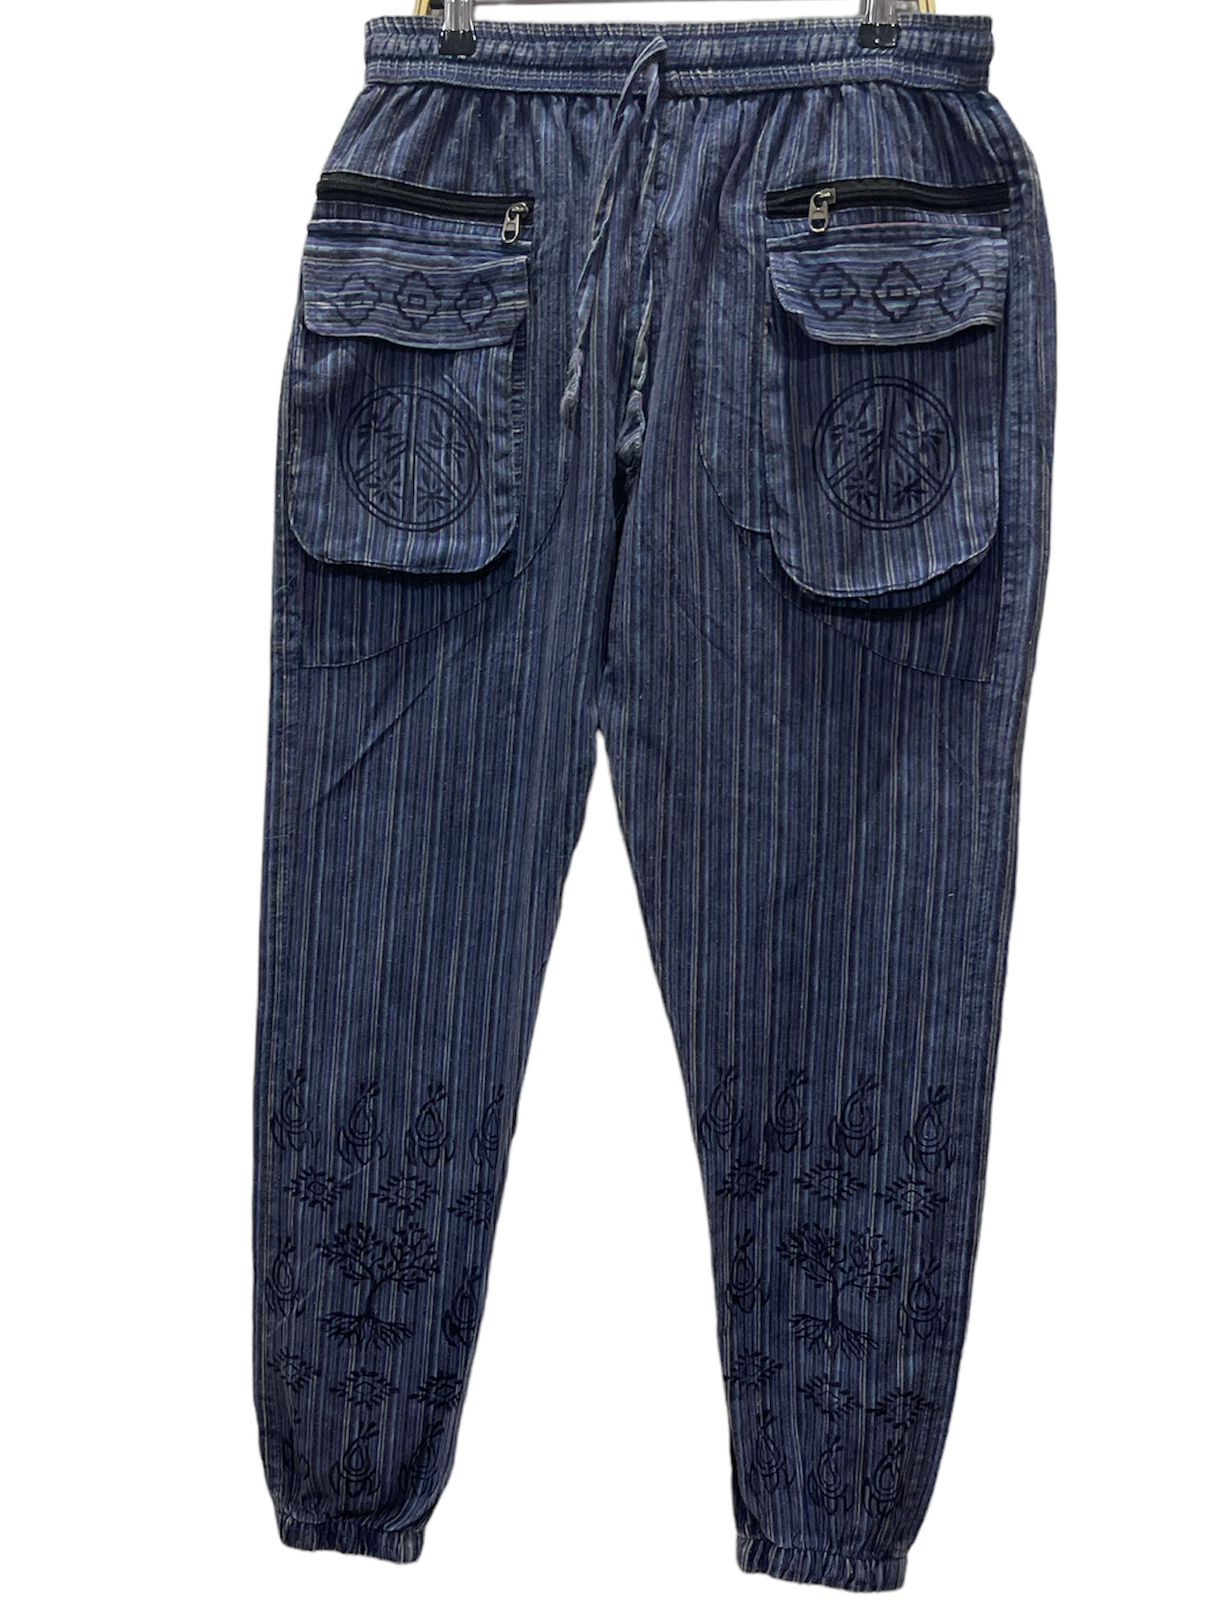 Pants Cotton Striped Peace-hotRAGS.com